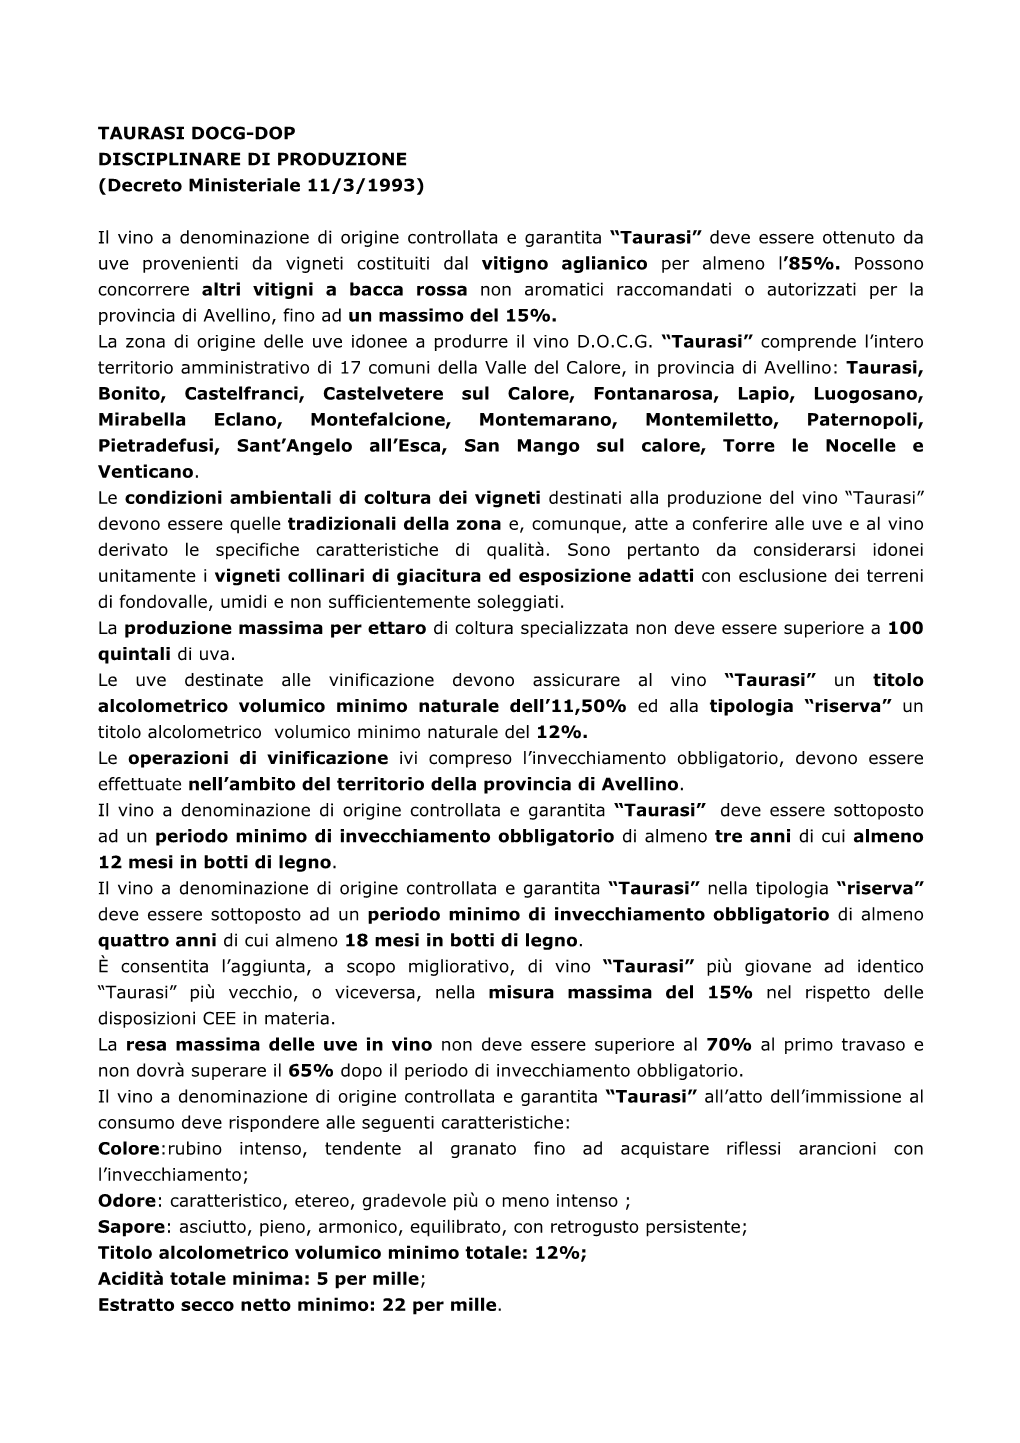 TAURASI DOCG-DOP DISCIPLINARE DI PRODUZIONE (Decreto Ministeriale 11/3/1993)